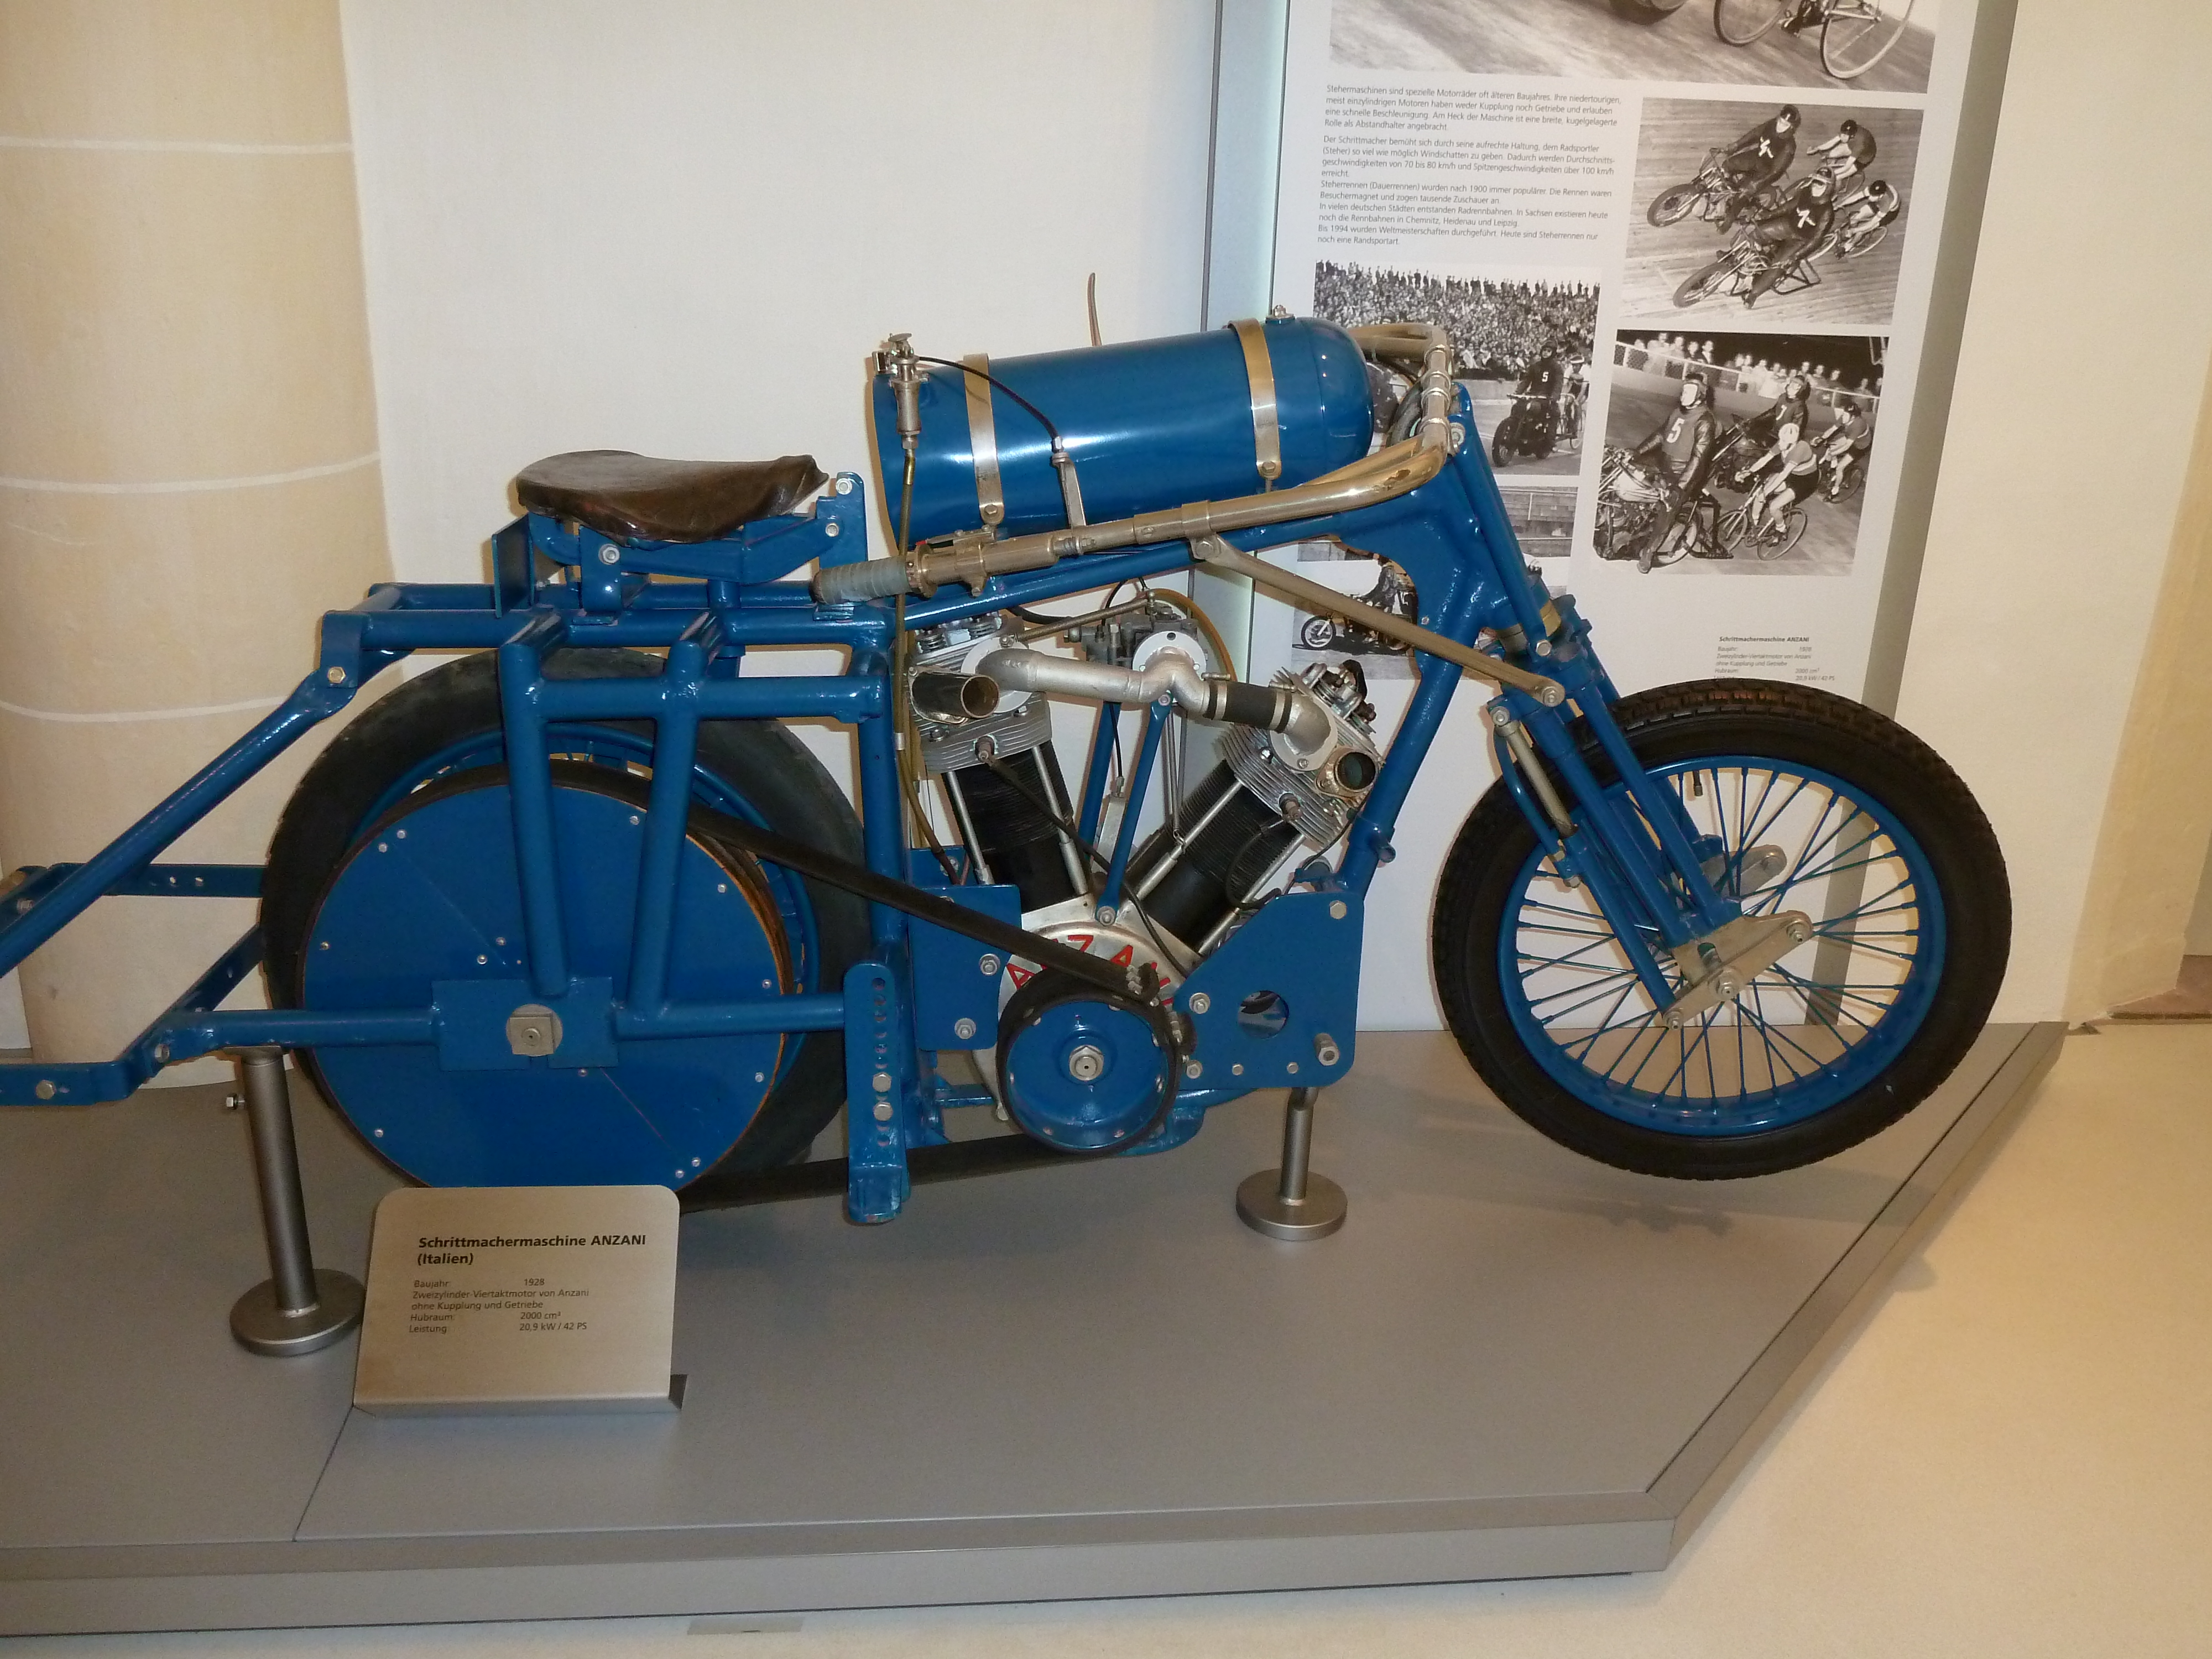 Motorradmuseum im Schloss Augustusburg
Schrittmachermaschine.